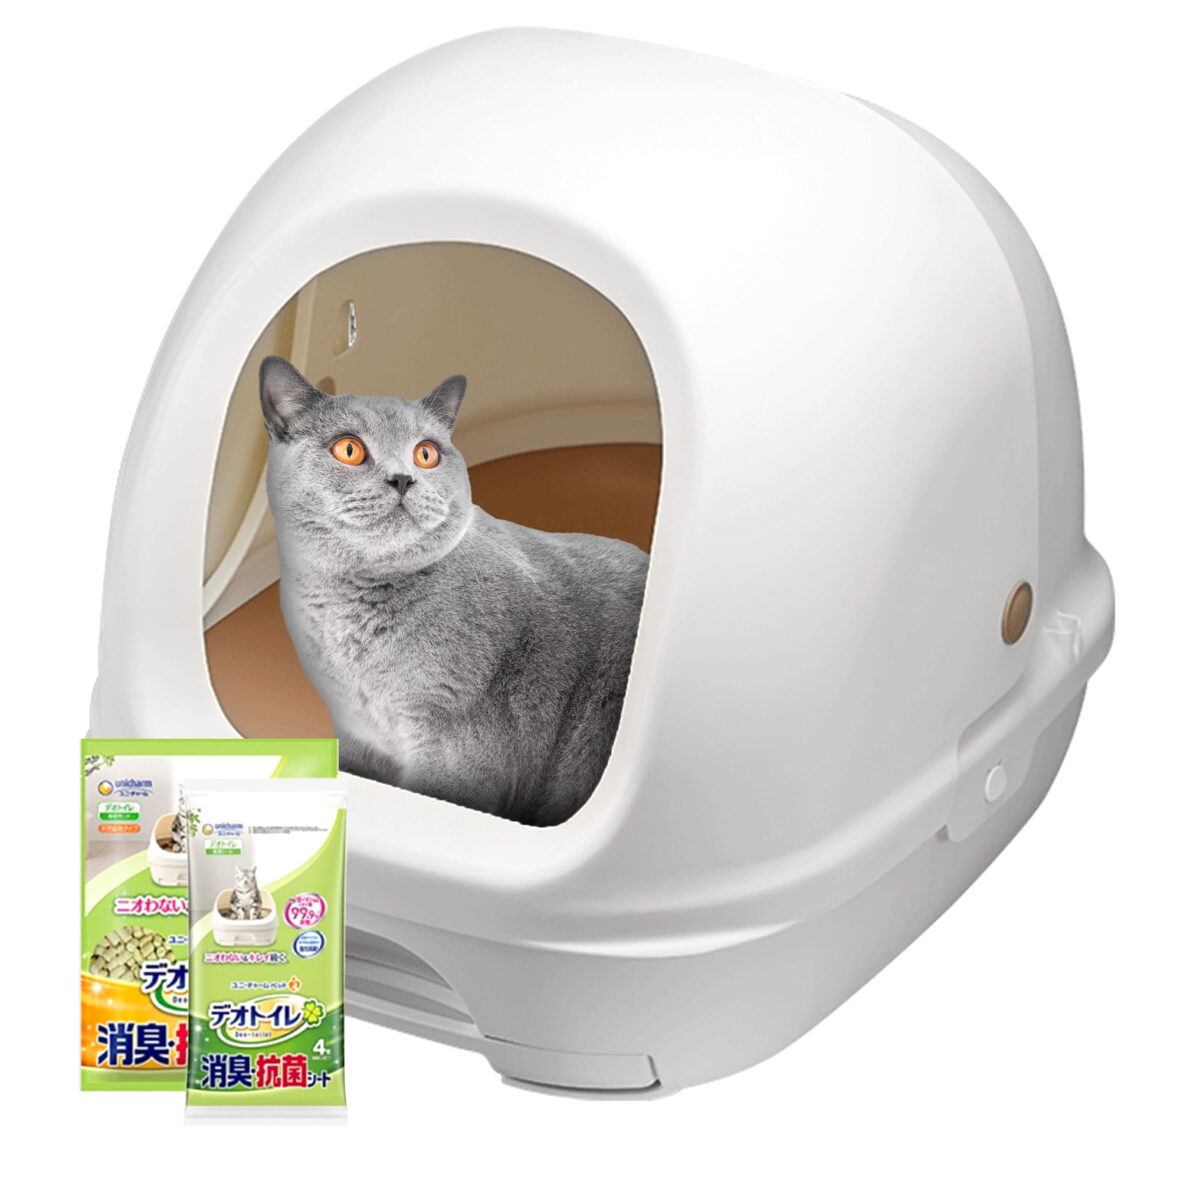 Uždara 2 pakopų kačių tualetas (dėžė + 1,6 kg granulės + 4 sugeriantys įklotai) Hooded Tidy cats Breeze litter box Originali versija iš Japonijos. Japoniškas kačių tualetas